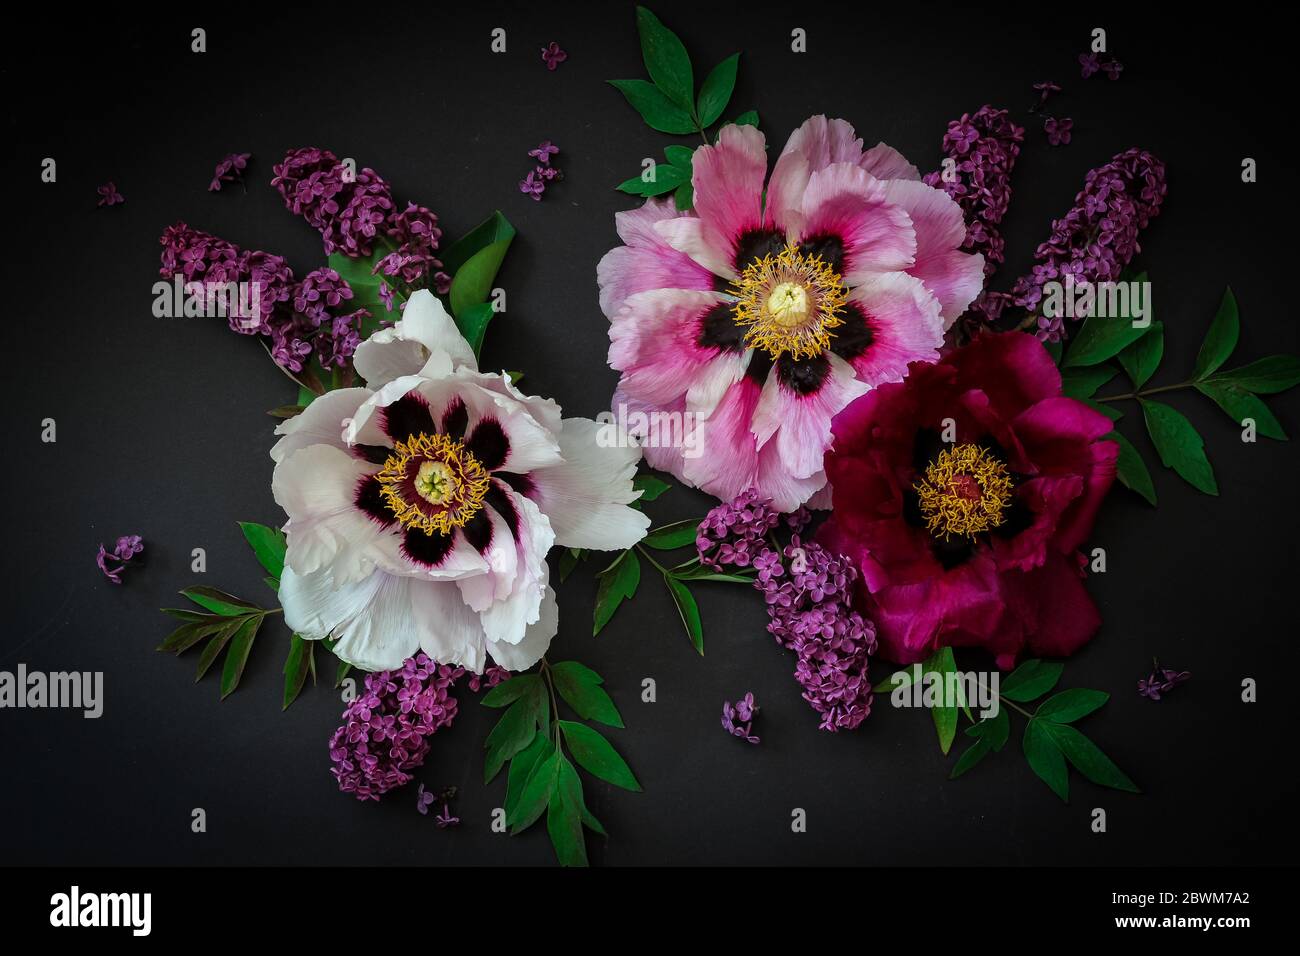 Arrangement floral avec des pivoines et des lilas sur fond noir Banque D'Images